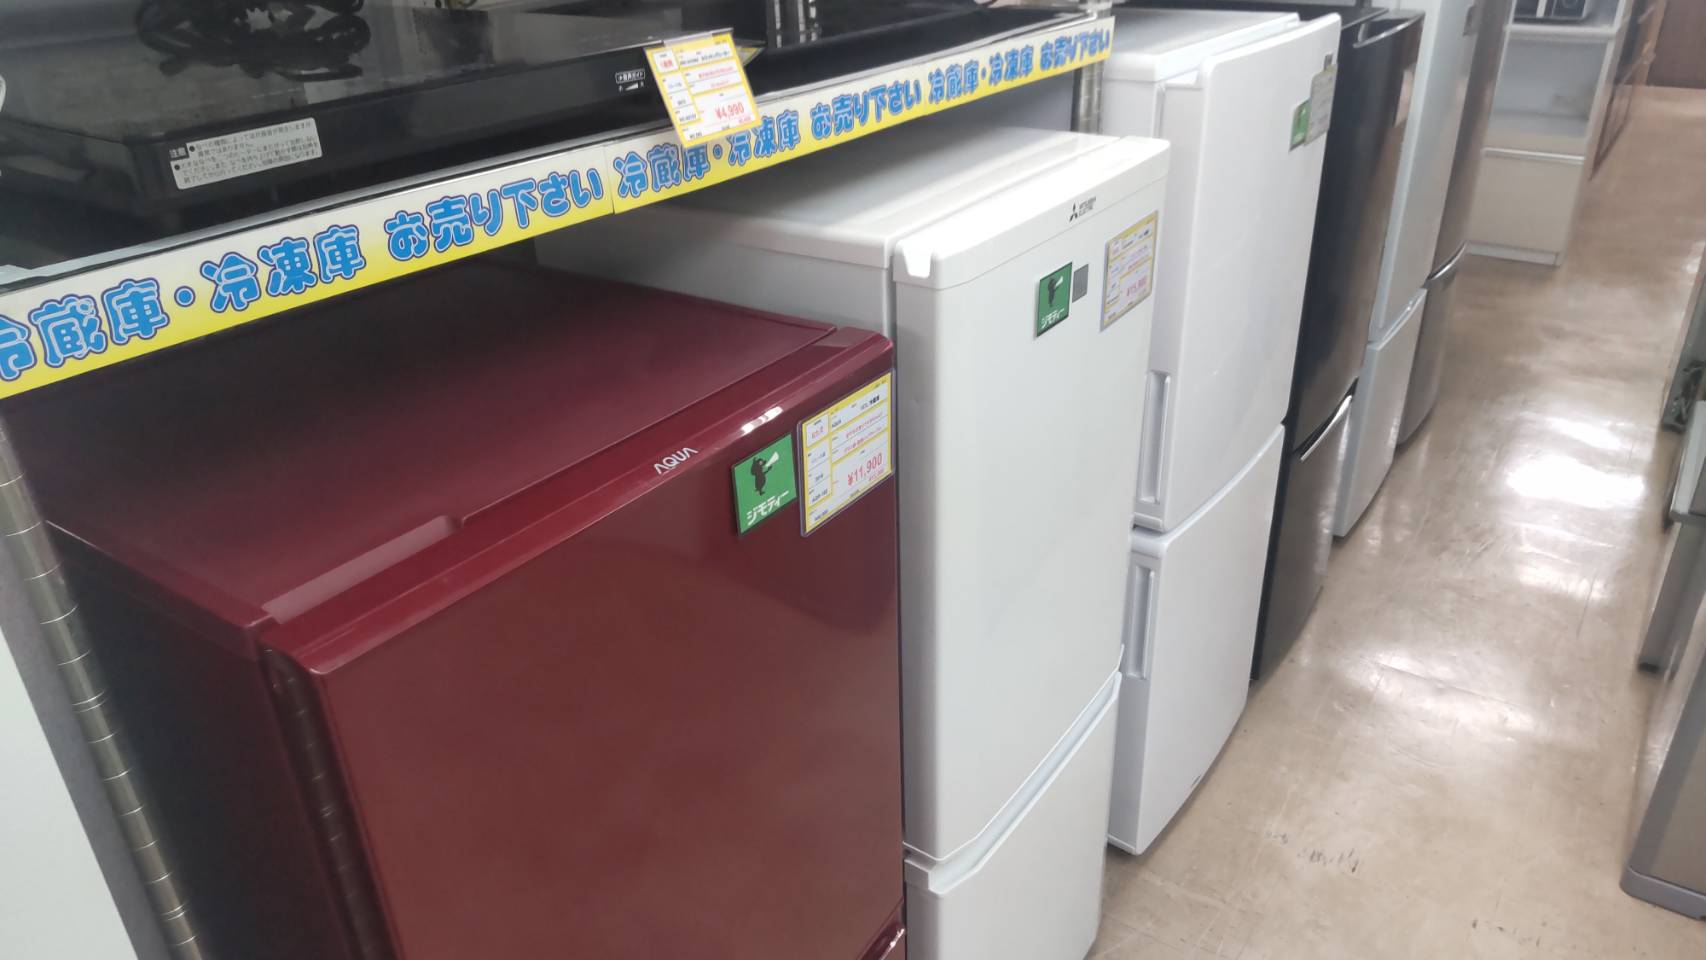 単身冷蔵庫 在庫多数御座います！！ぜひ一度ご来店下さい(^^♪⭐福岡市 早良区 リサイクルショップ リサイクルマート原店⭐